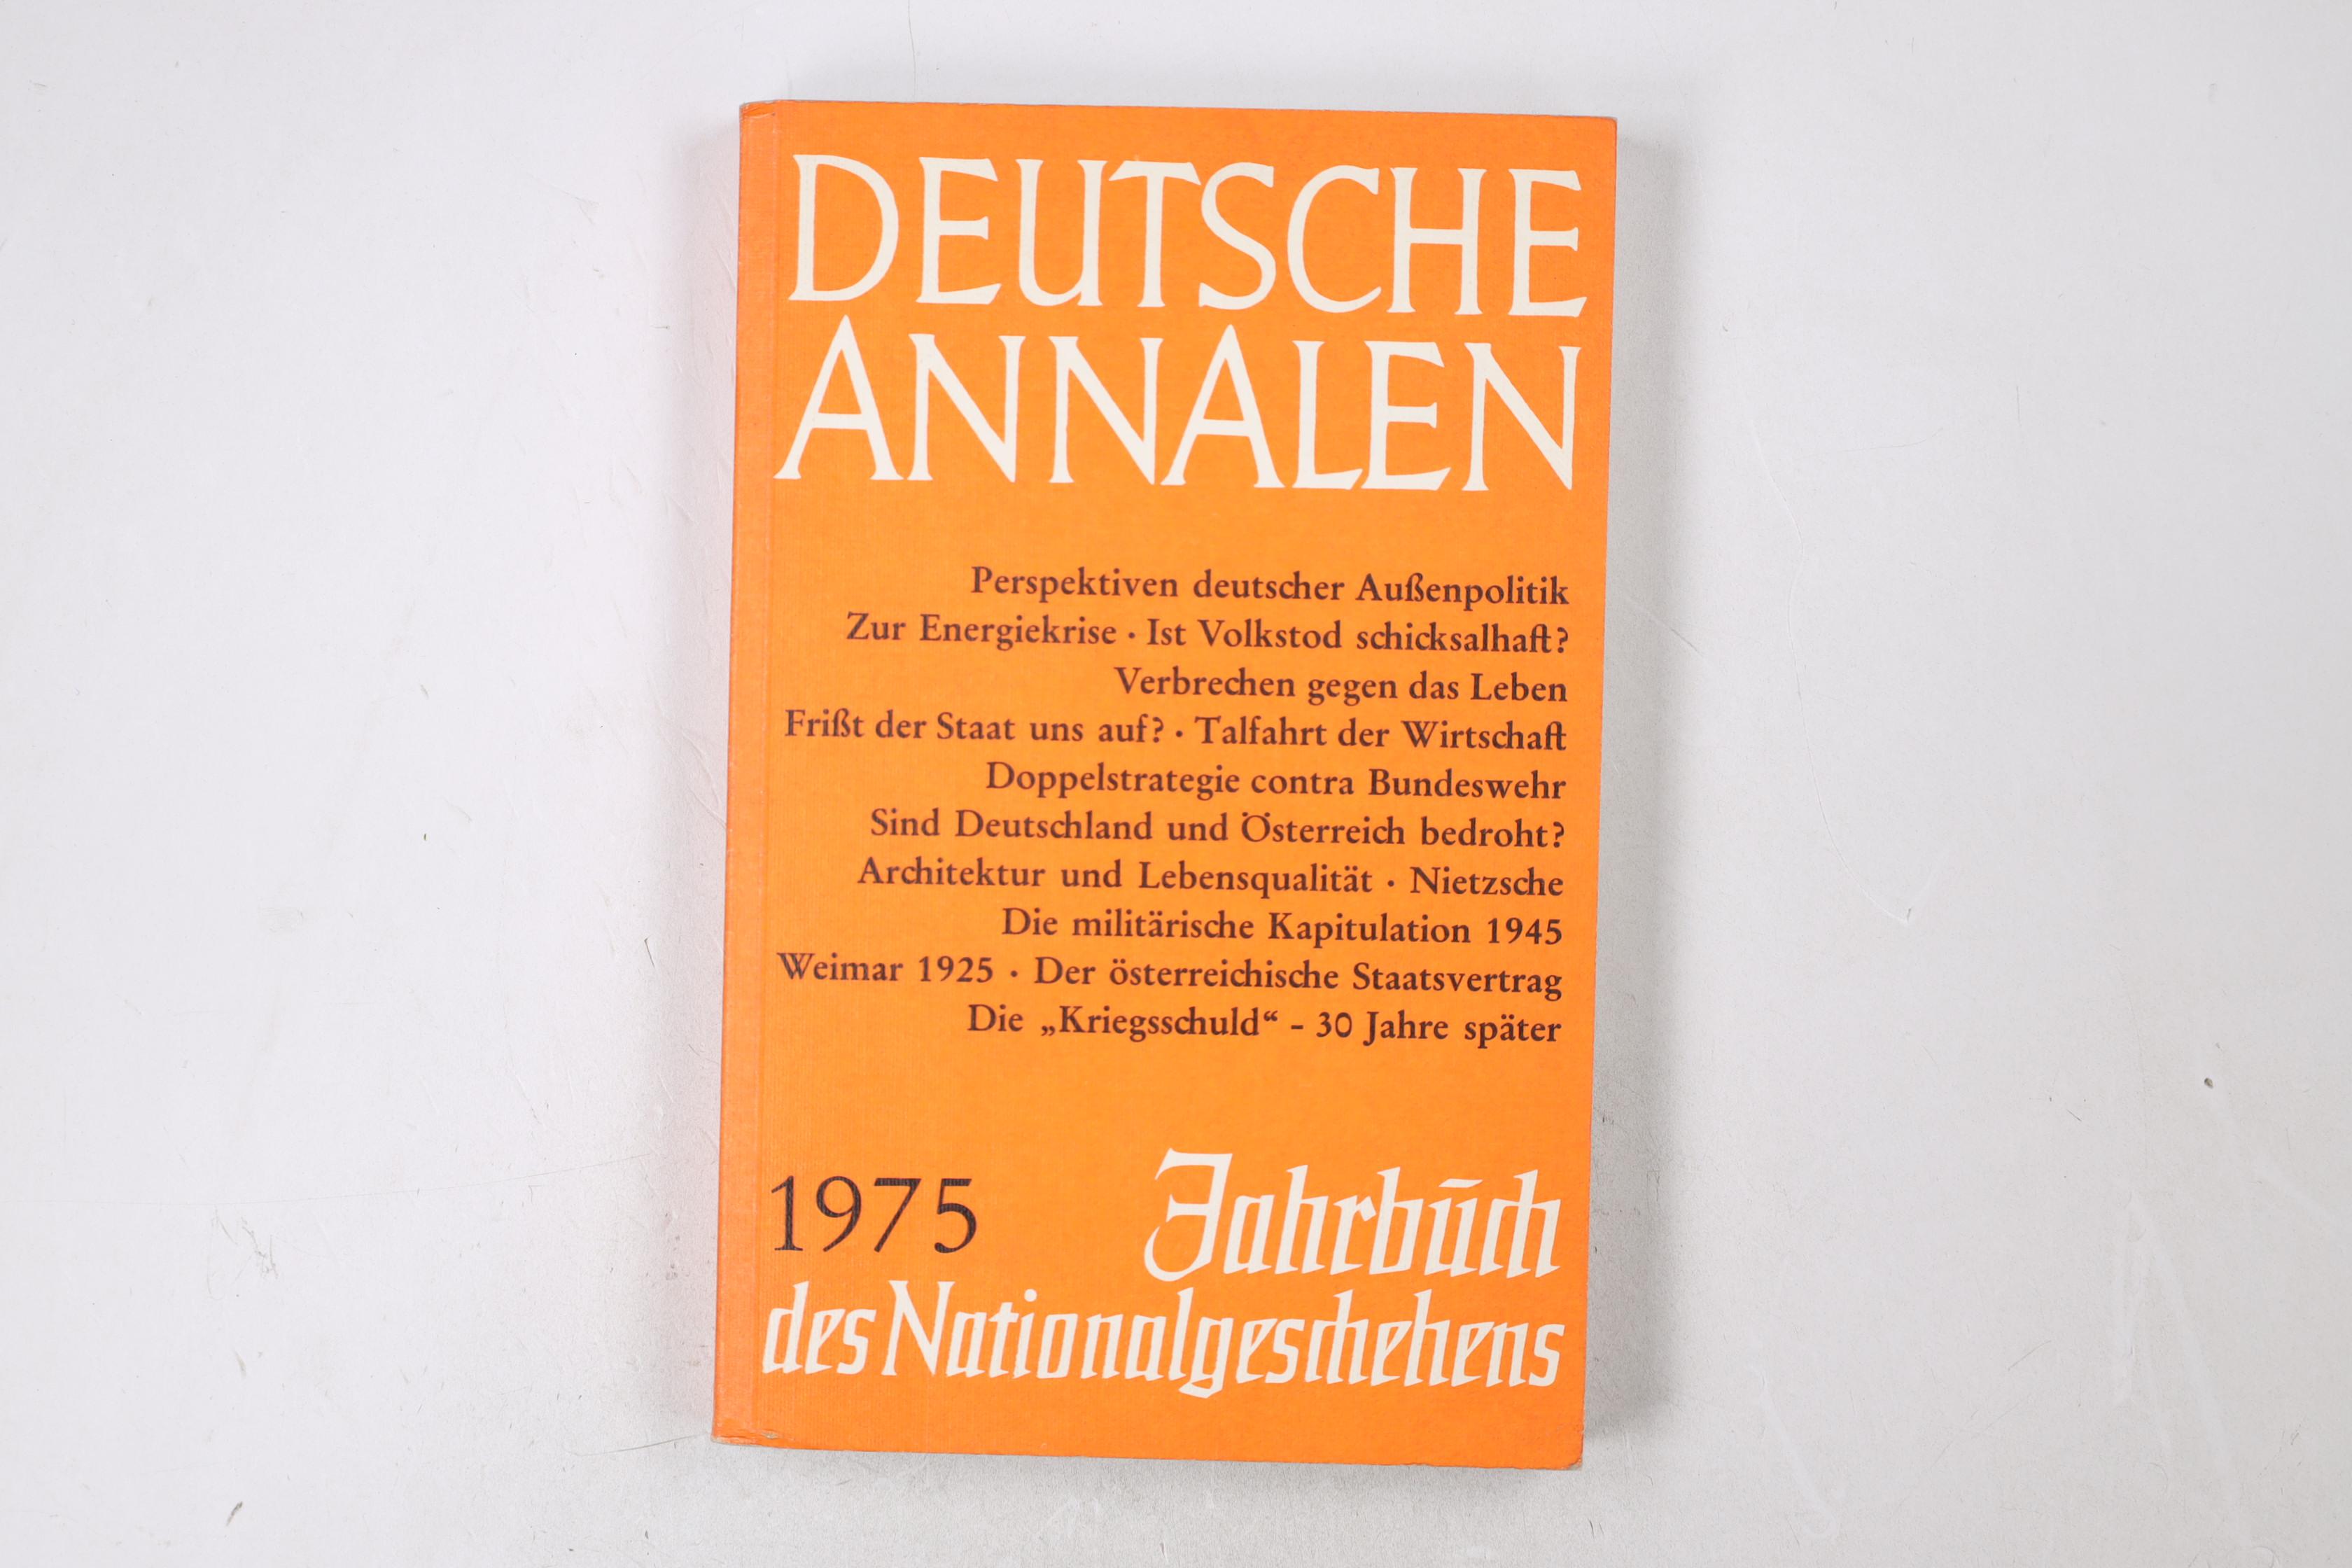 DEUTSCHE ANNALEN. JAHRBUCH DES NATIONALGESCHEHENS 1975. - Heinrich Schade